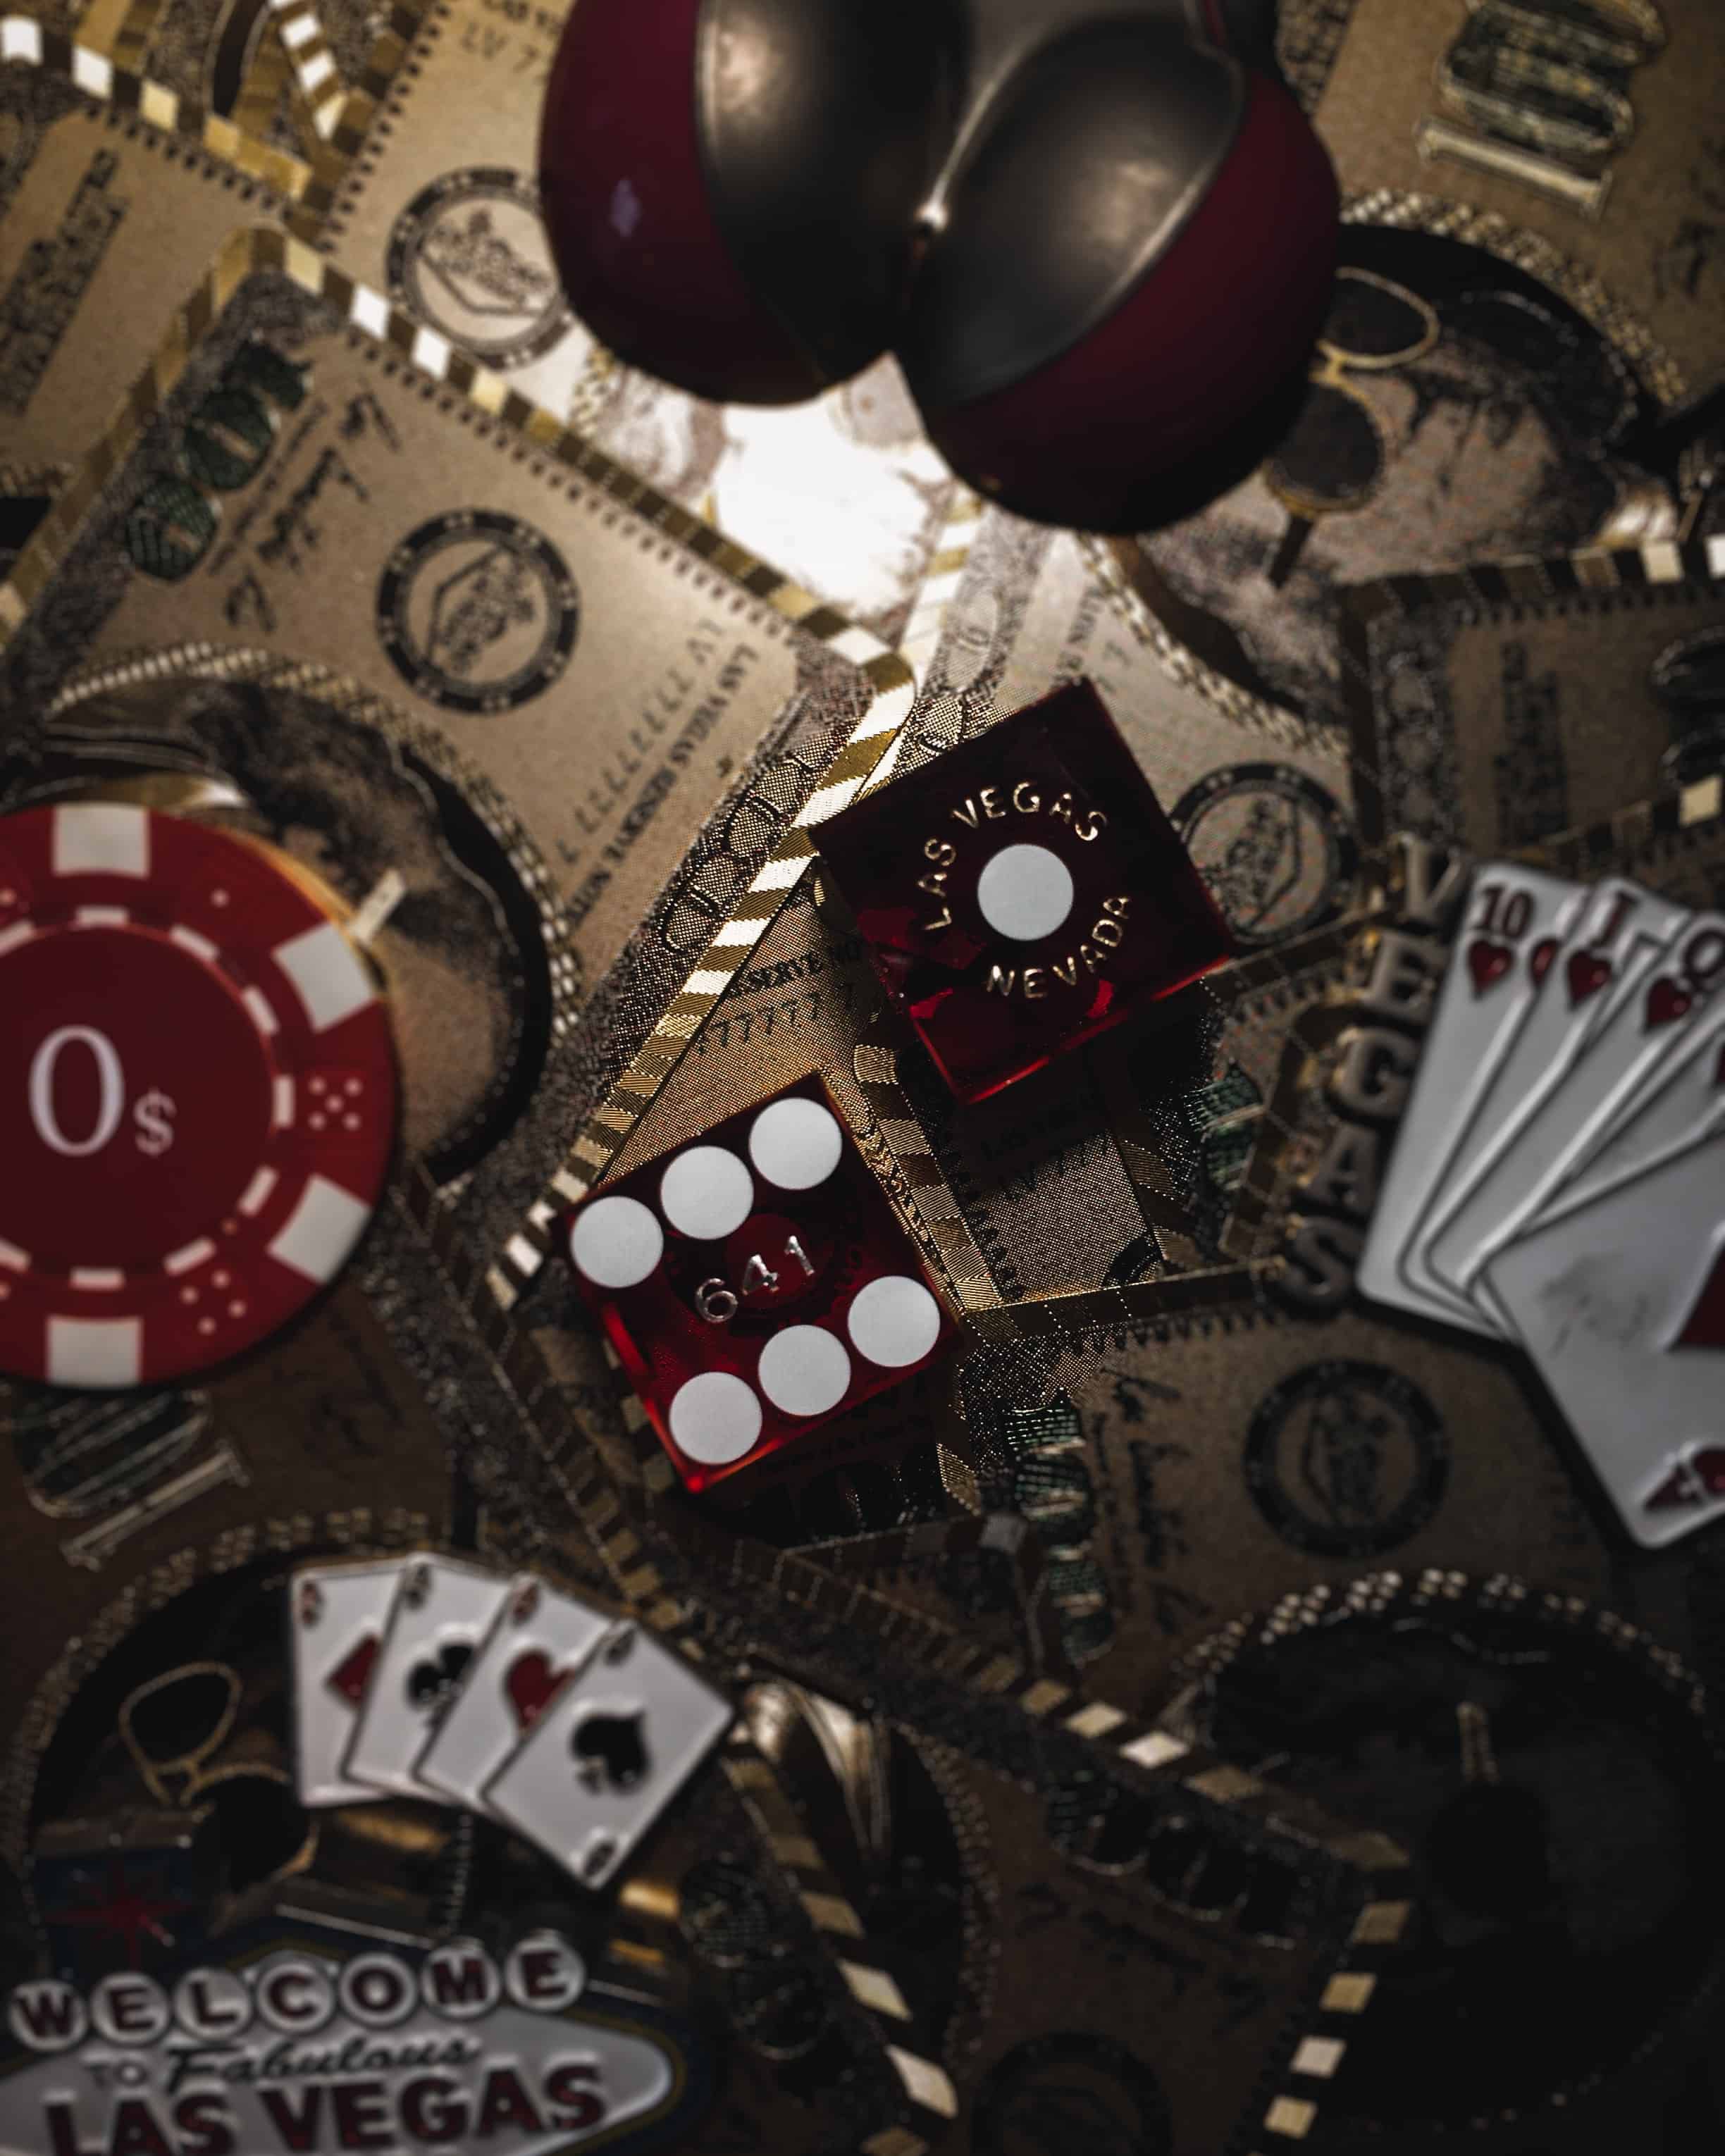 Online-Glücksspiel boomt: Welche Casinos gibt es ohne Lizenz und sind sie seriös?